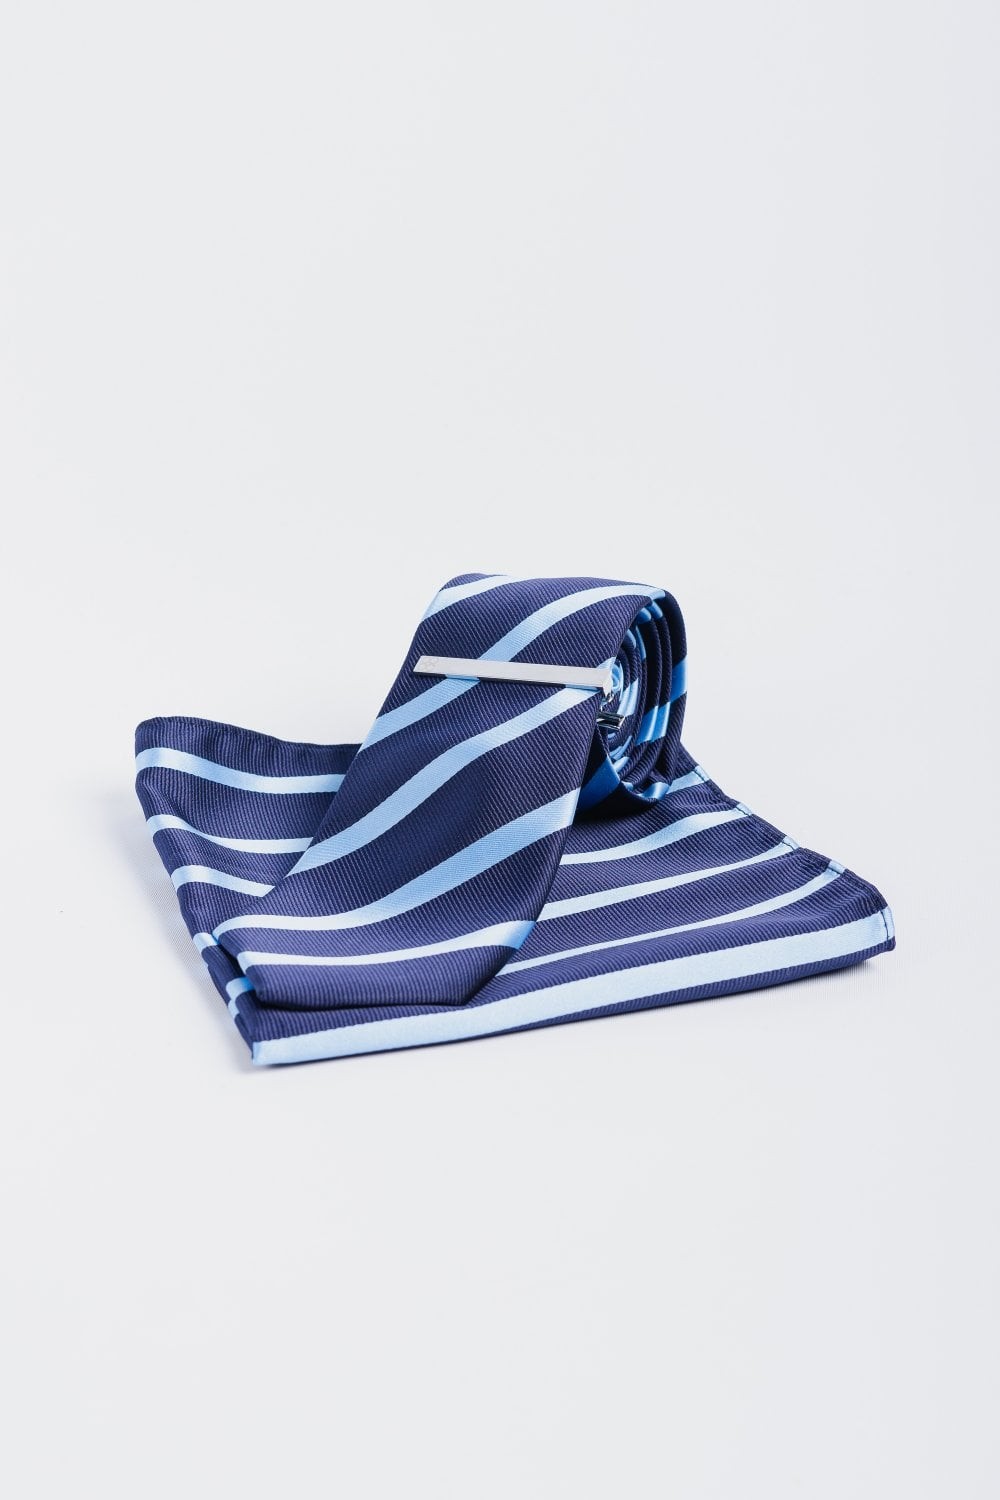 Men's Striped Tie Set  - Navy Blue